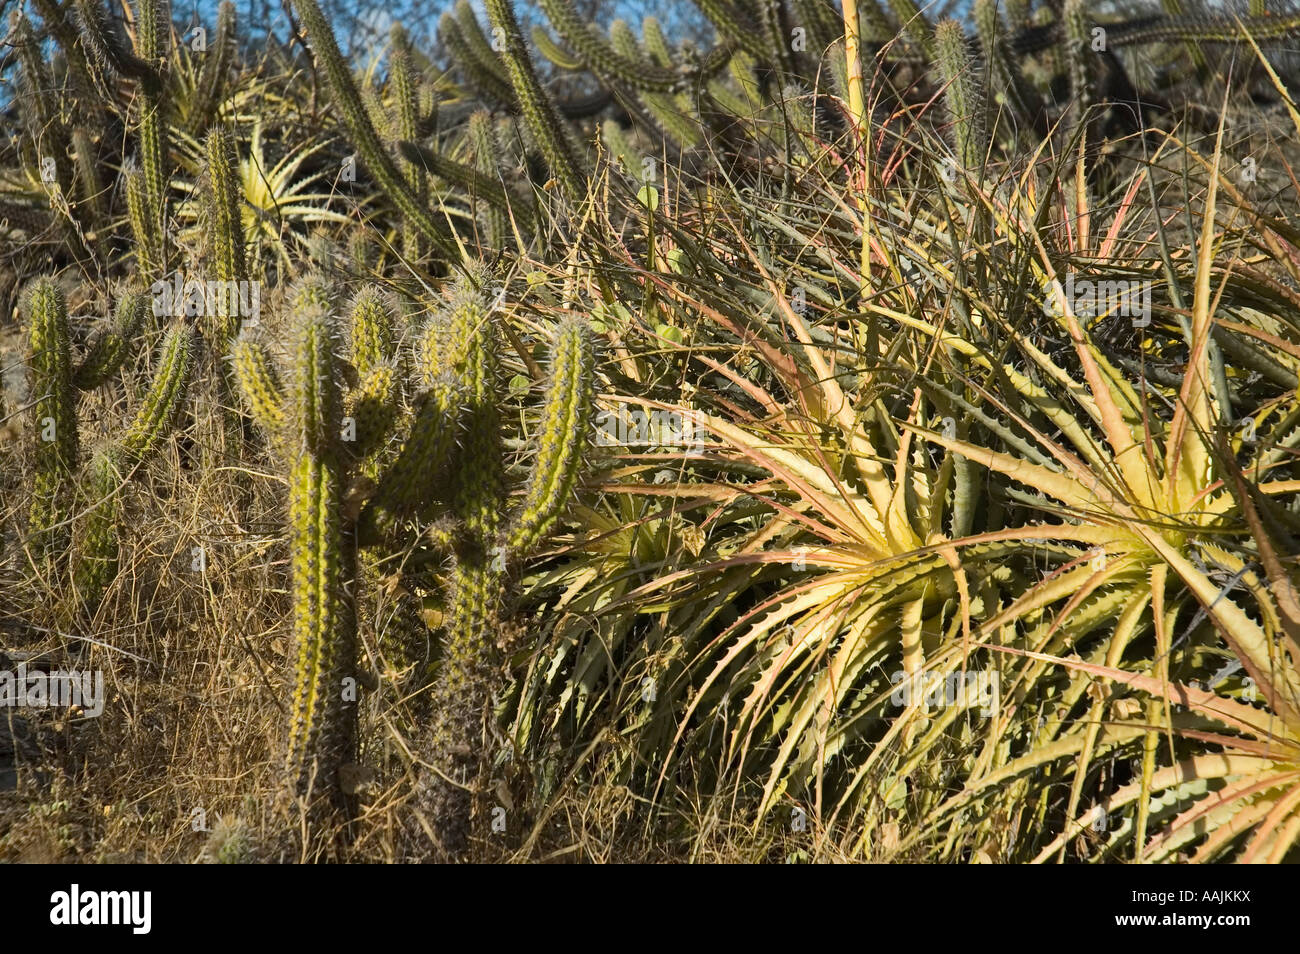 caatinga - arid climate vegetation Stock Photo